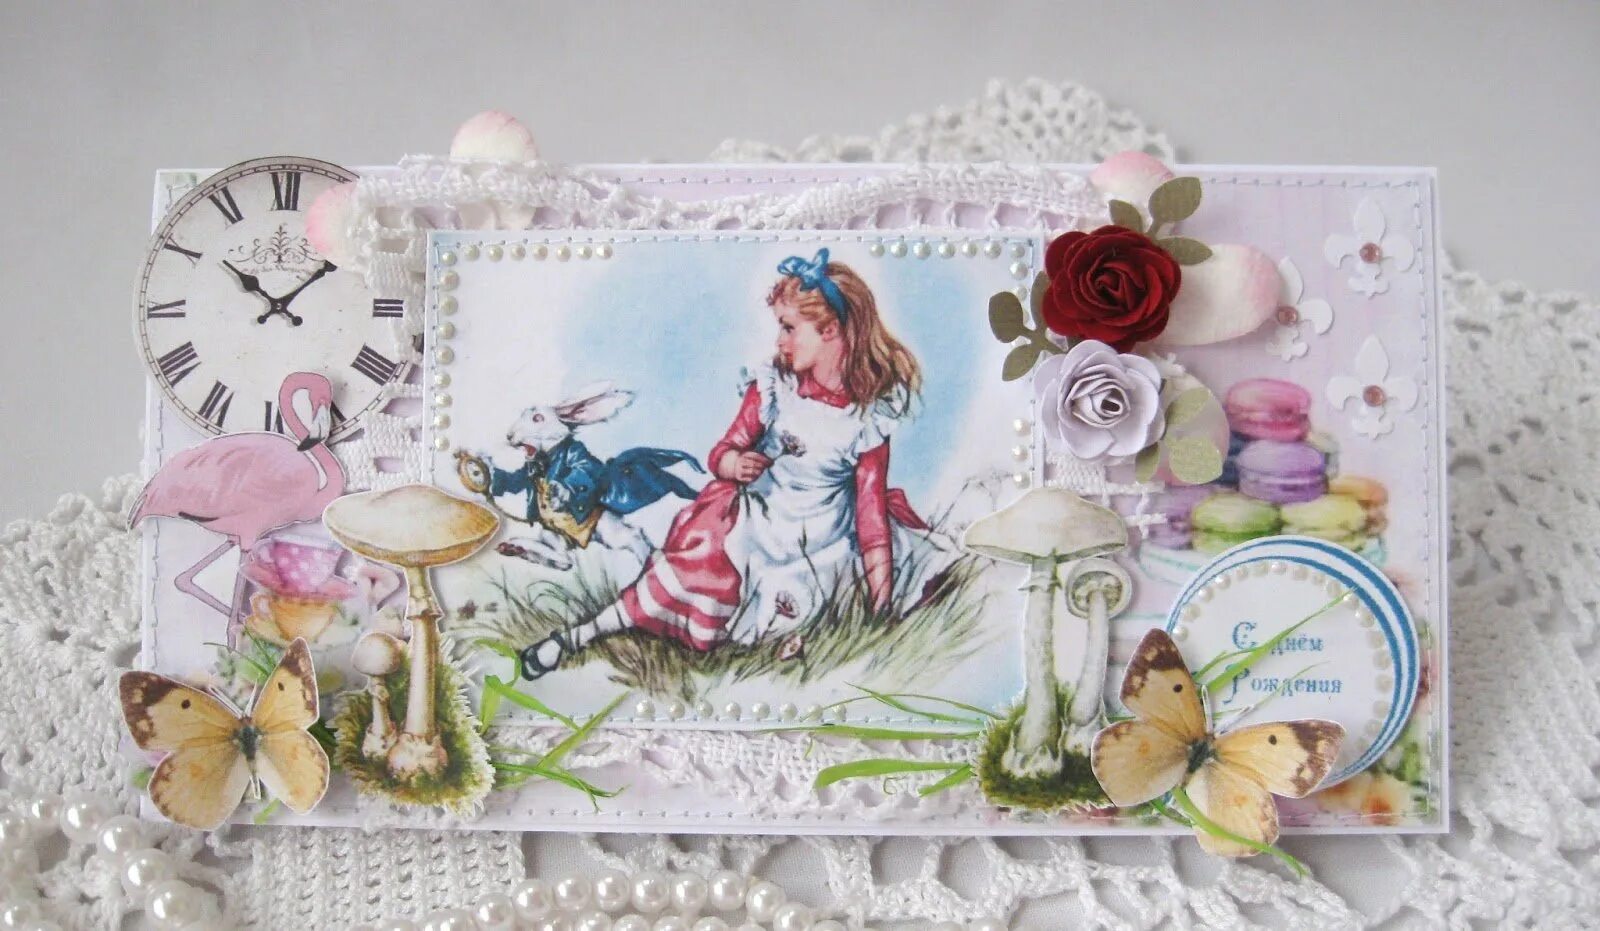 Алиса красивые открытки. Открытка для девочки Скрапбукинг. Скрап открытка Алиса в стране чудес. Алиса открытка. Открытка Скрапбукинг Алиса в стране чудес.